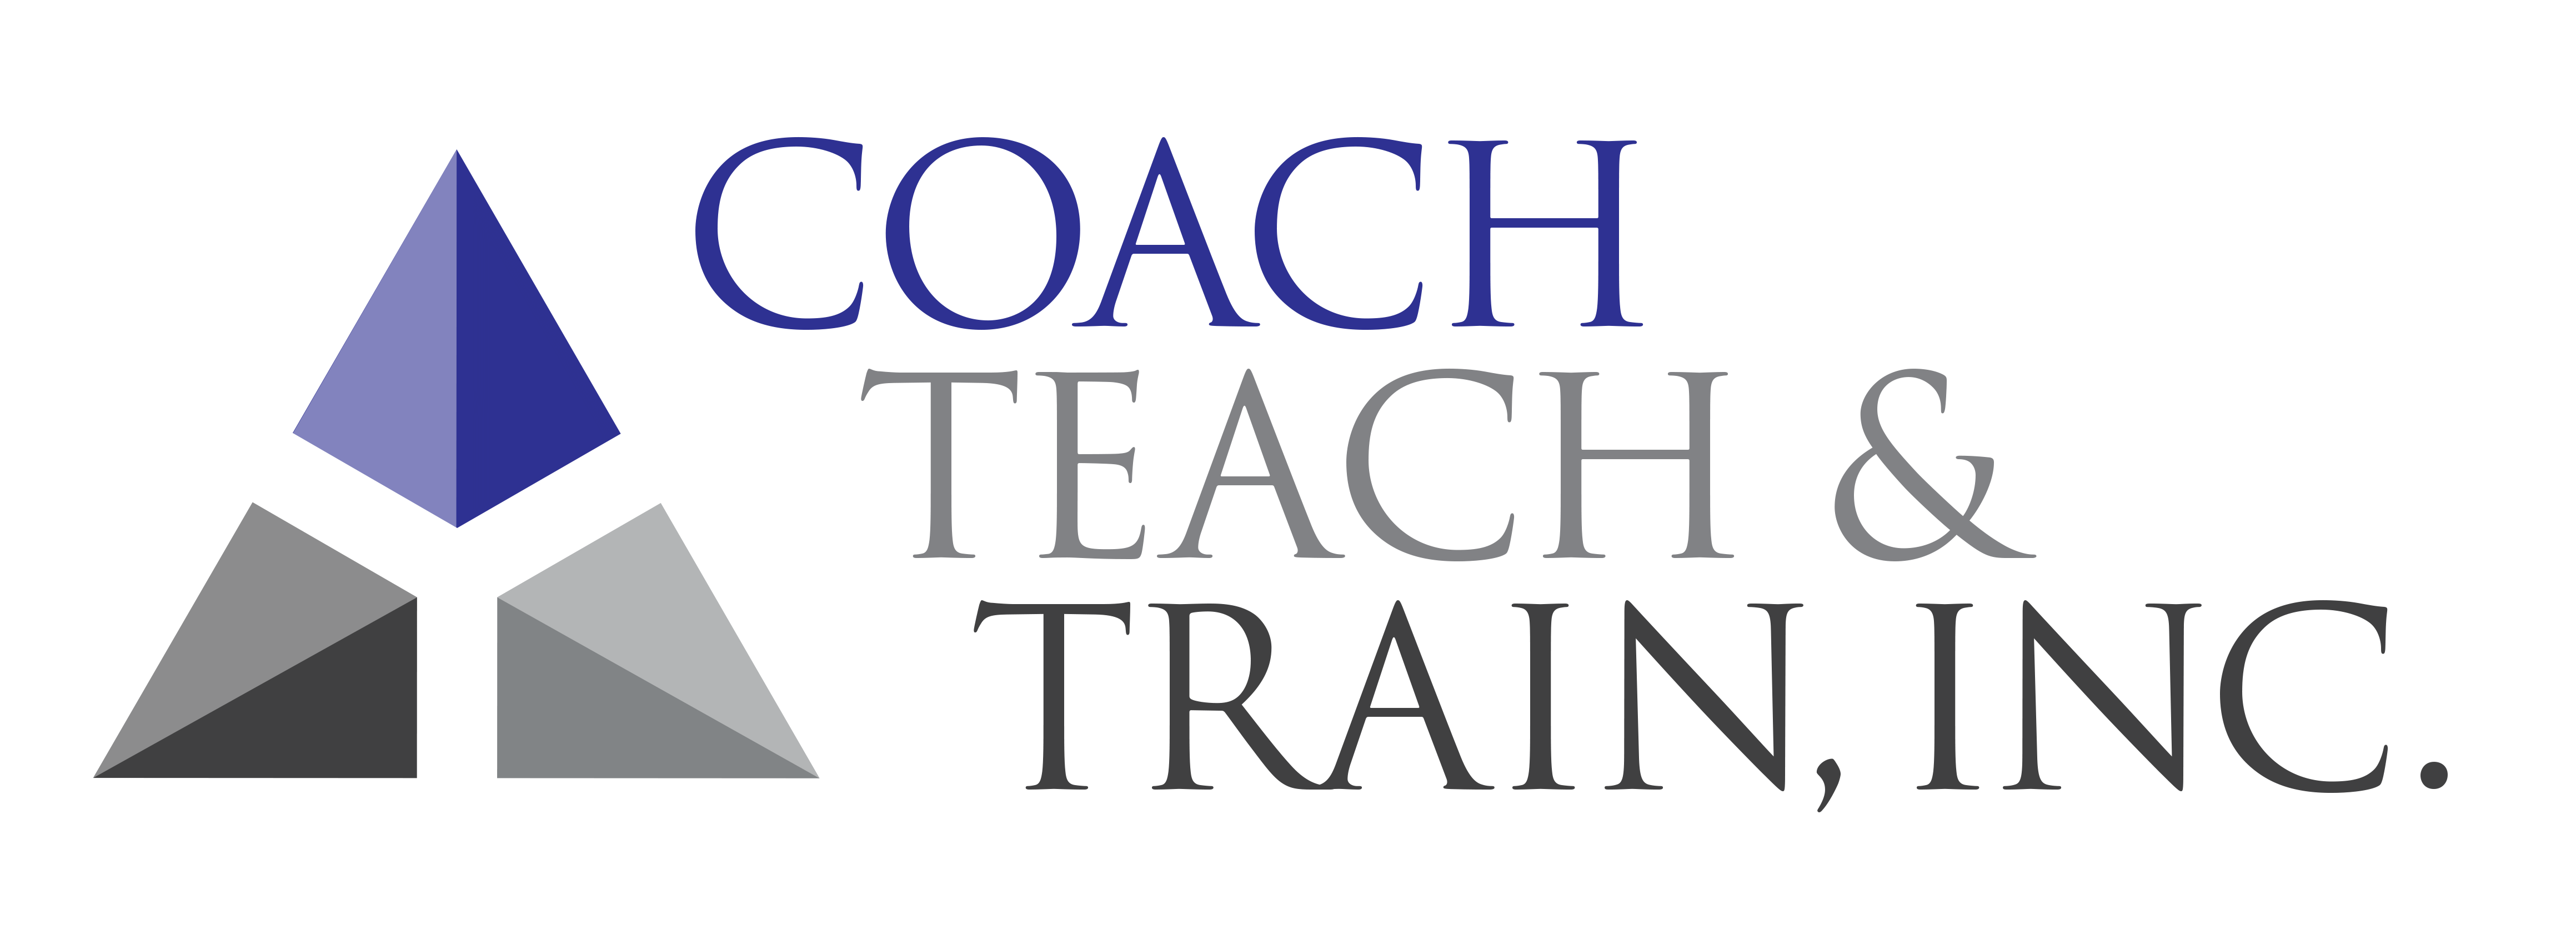 Coach Teach and Train